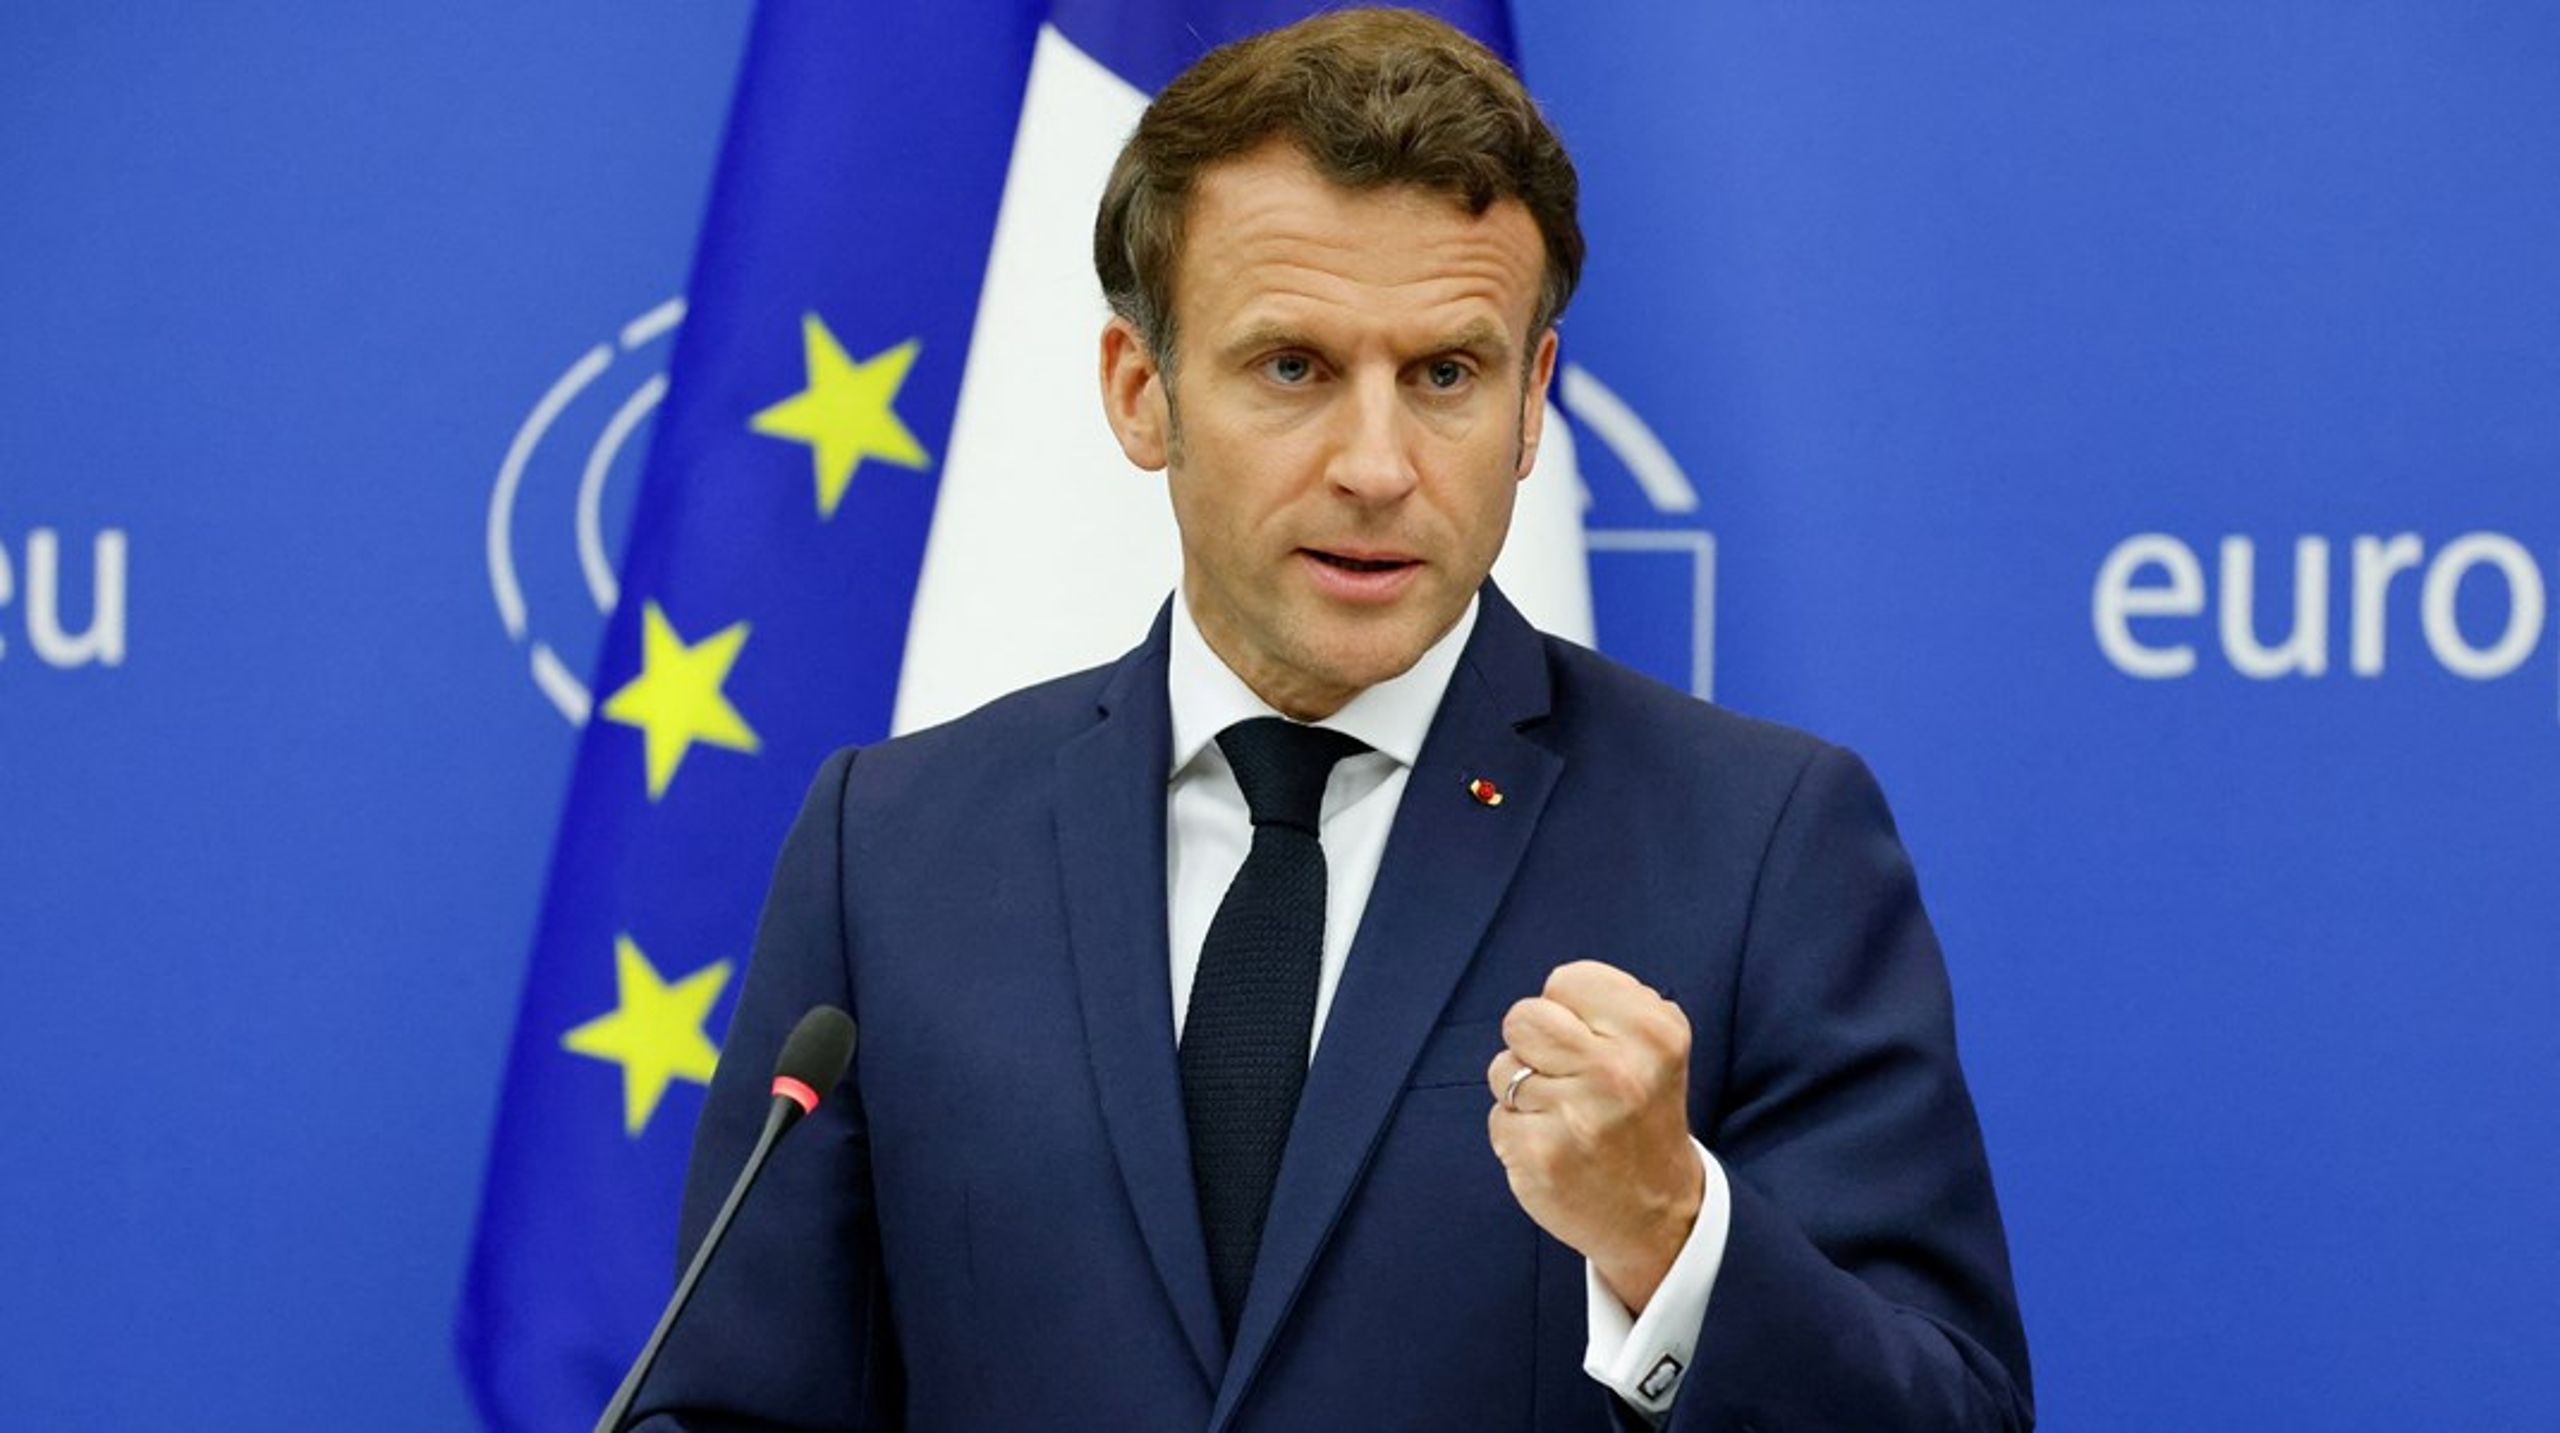 I en tale i Europa-Parlamentet i Strasbourg til afslutningen af Konferencen om Europas Fremtid plæderede Emmanuel Macron for reformer af EU-traktaterne. Det skal være mere effektivt at træffe beslutninger i EU, mener han.